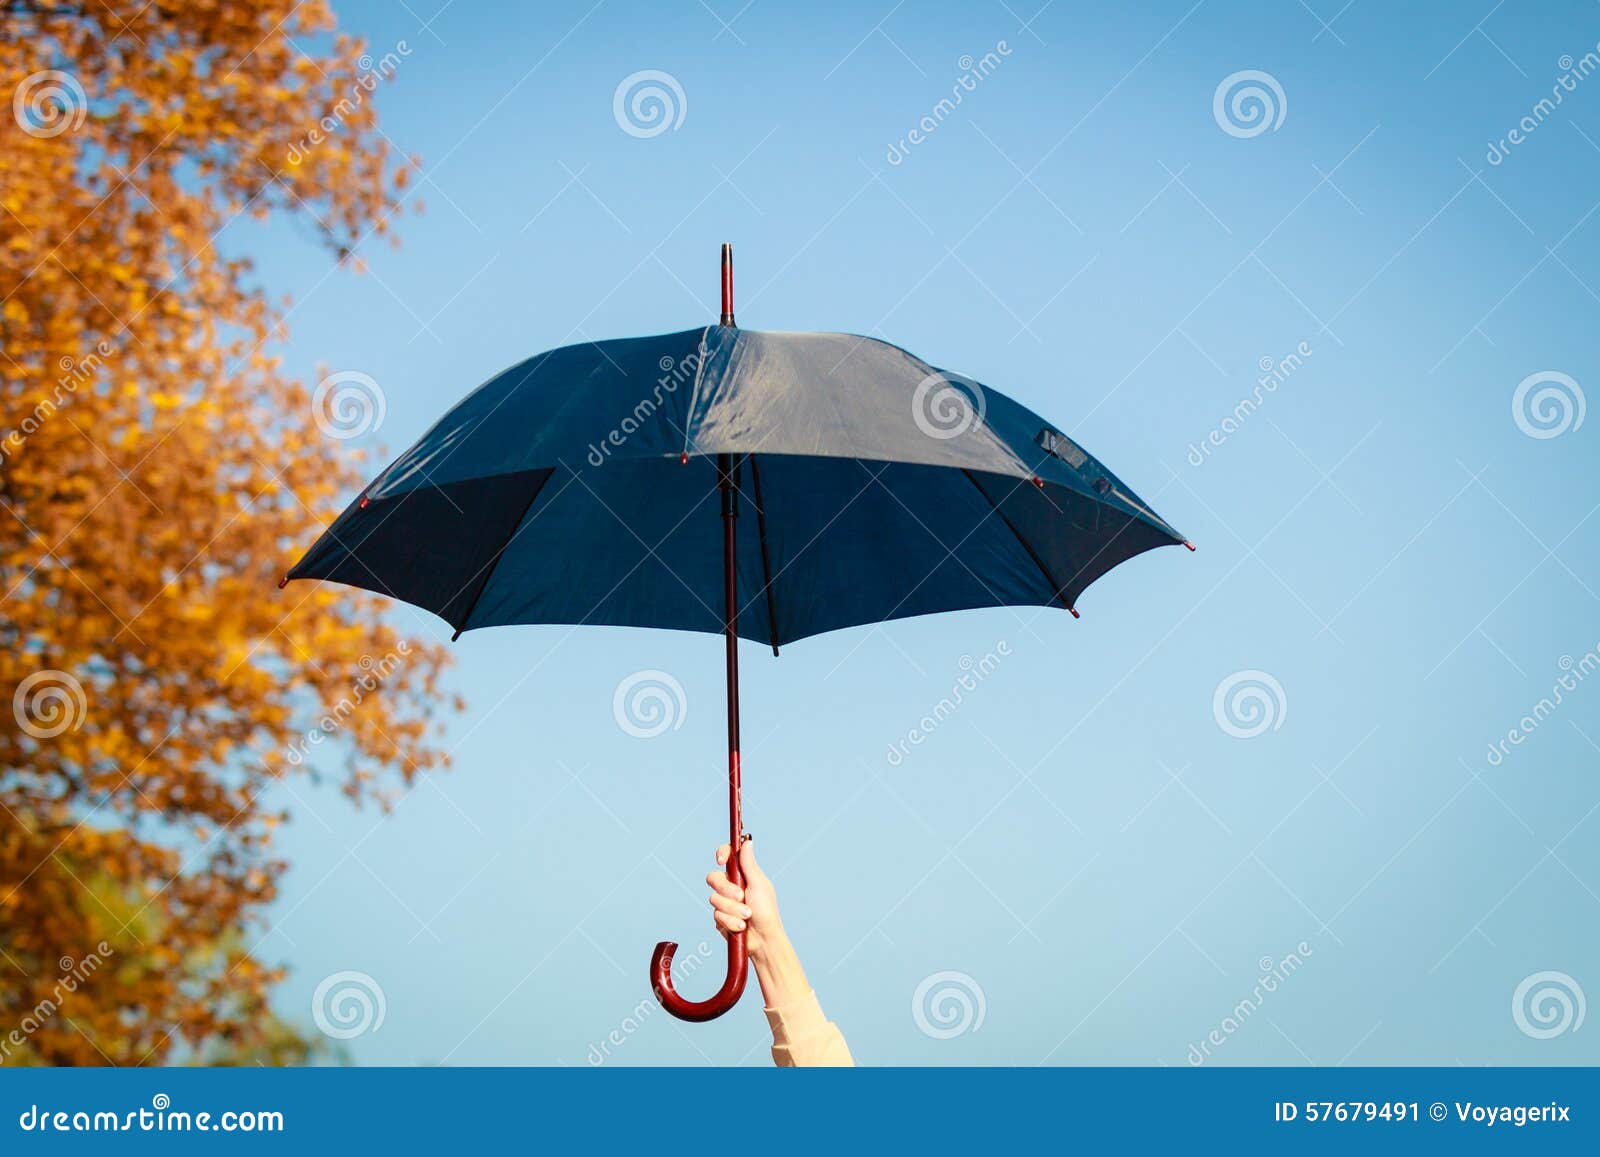 Зонтик раскрылся. Зонтик в руке. Человек под зонтом. Девушка с зонтиком в руках. Раскрытый зонт в руках.